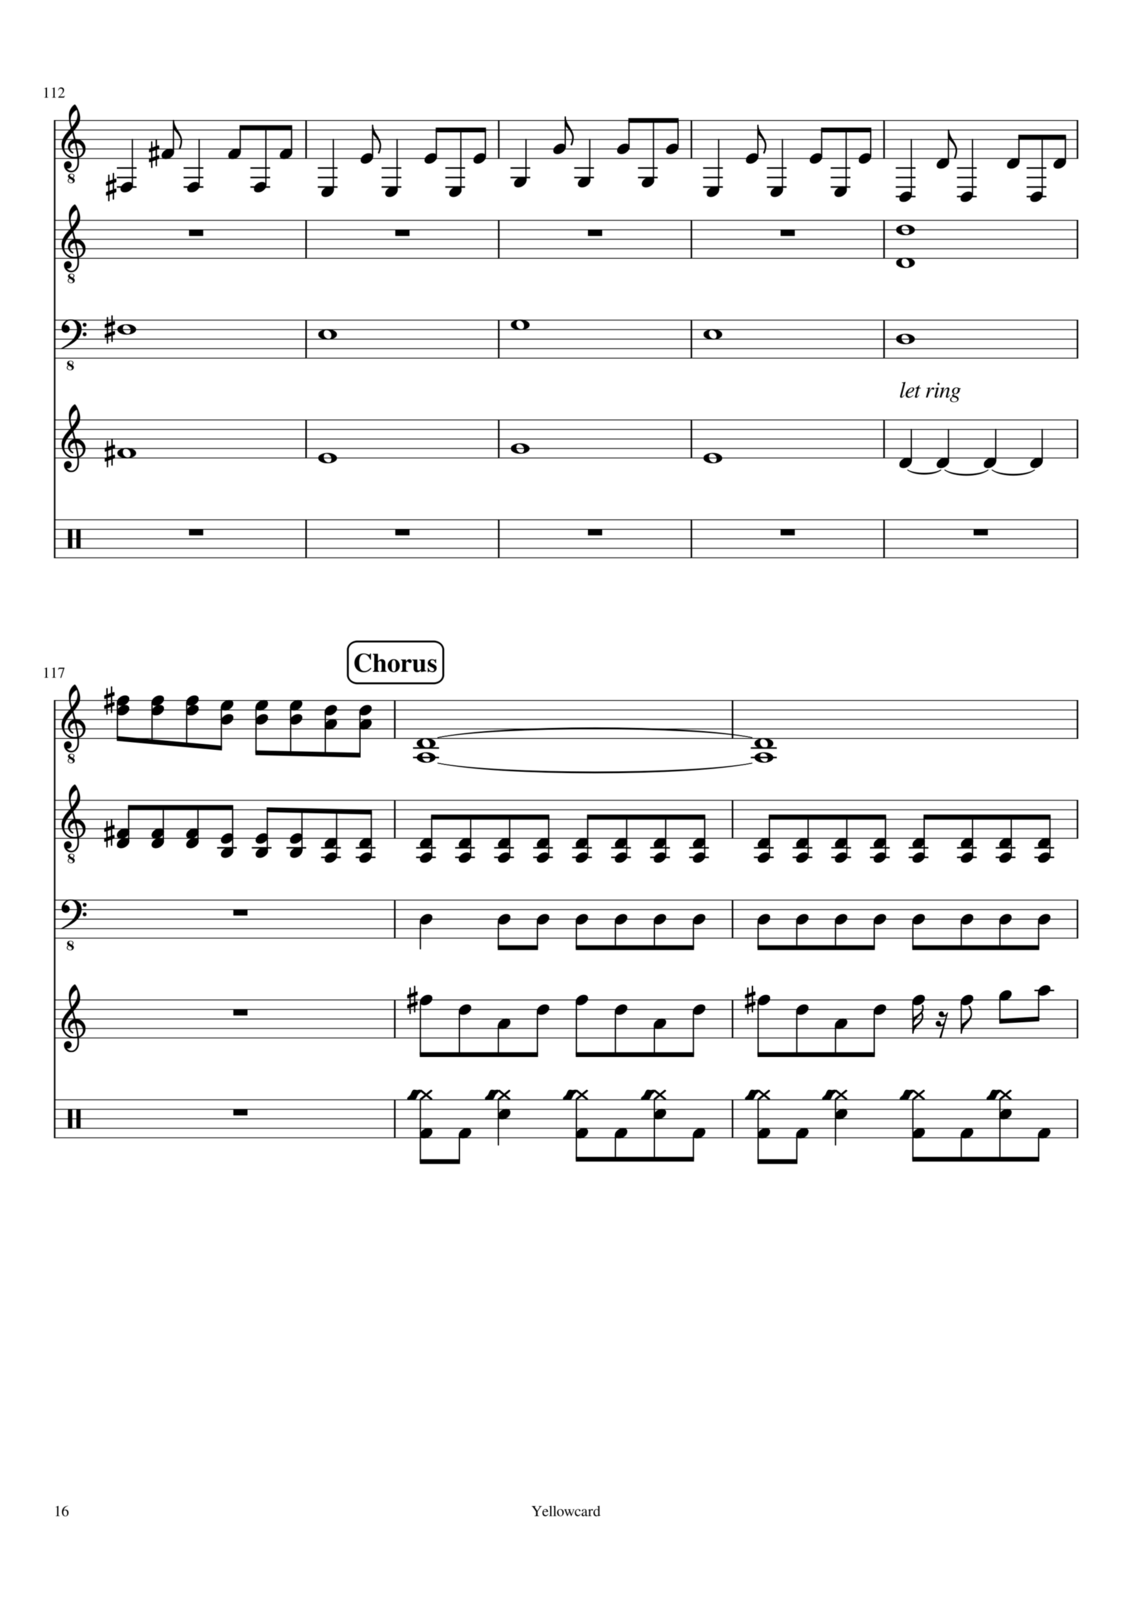 Vechnaya prizrachnaya vstrechnaya slide, Image 2